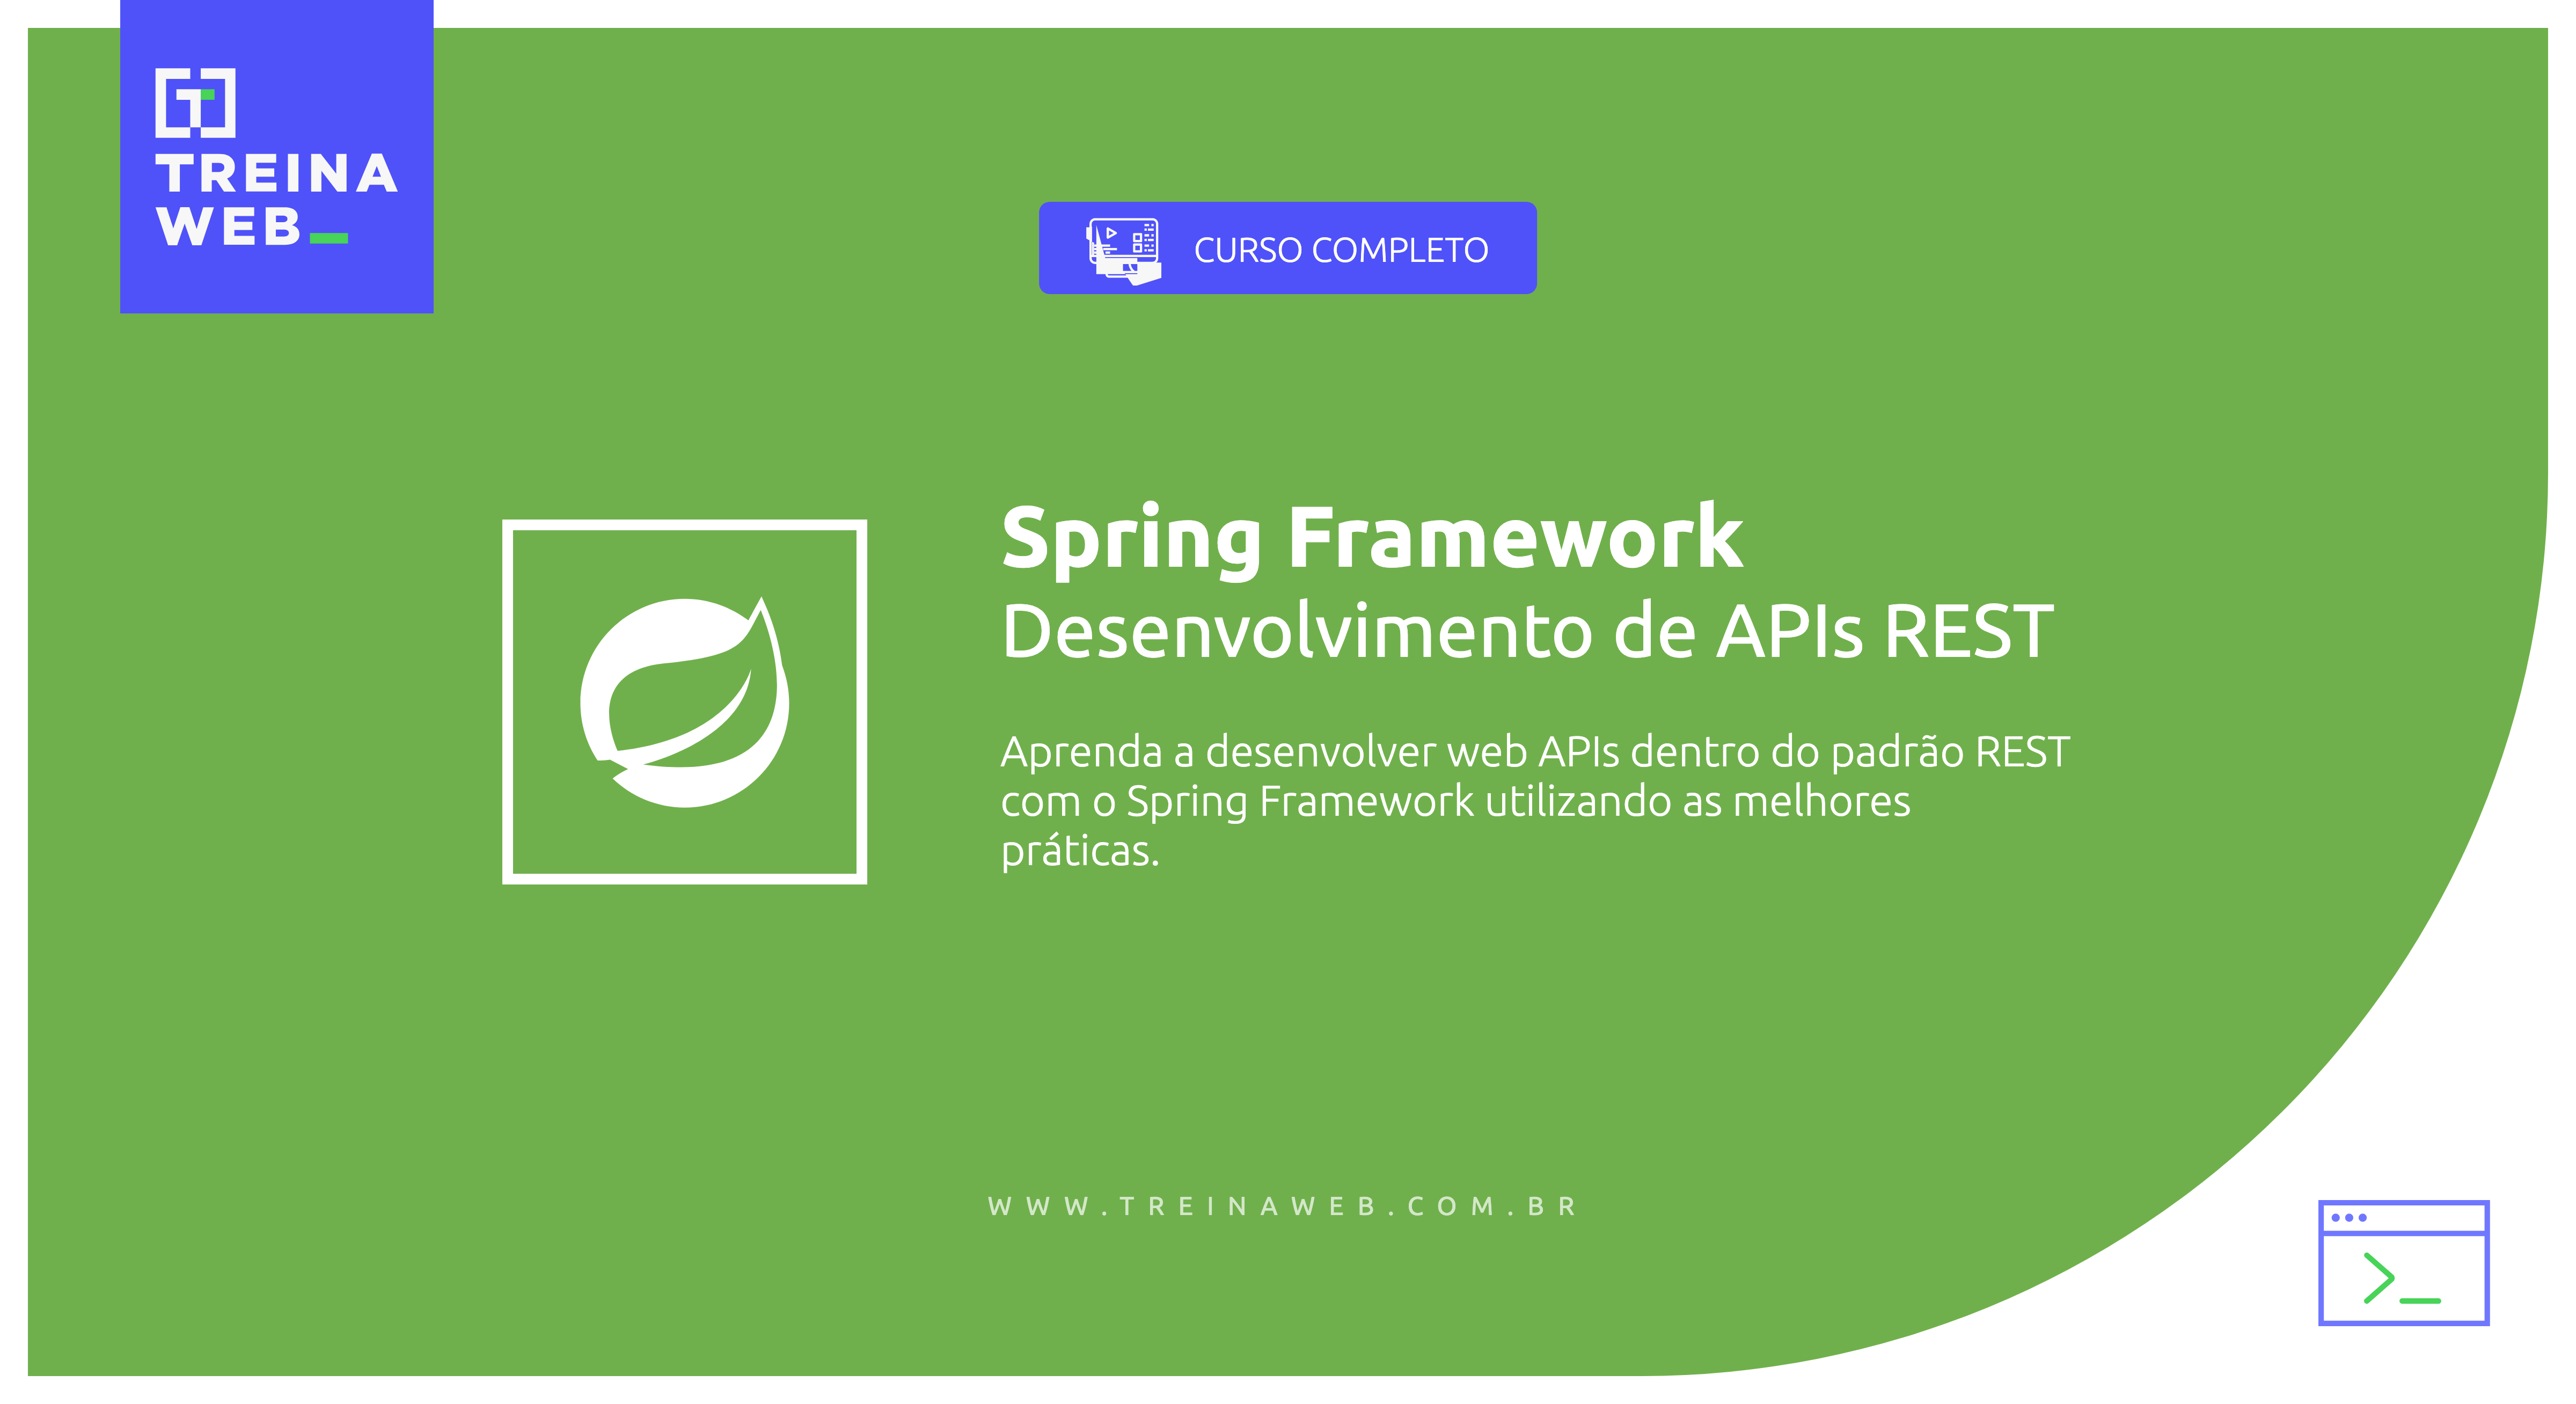 Imagem ilustrativa do curso Spring Framework - Desenvolvimento de APIs REST